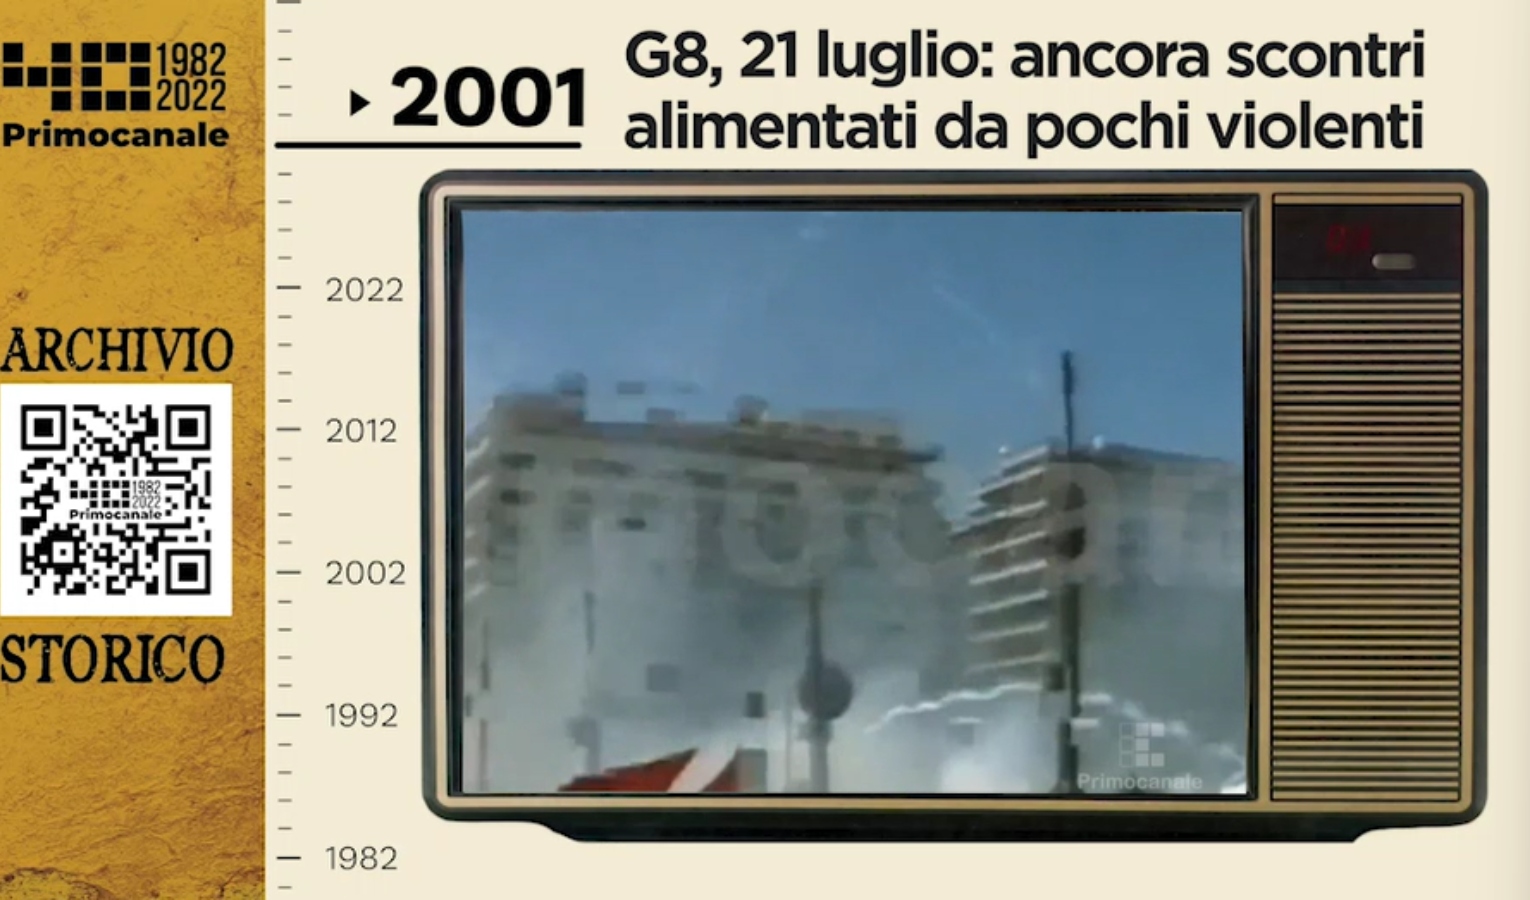 Dall'archivio storico di Primocanale, 2001: G8, 21 luglio, ancora scontri 